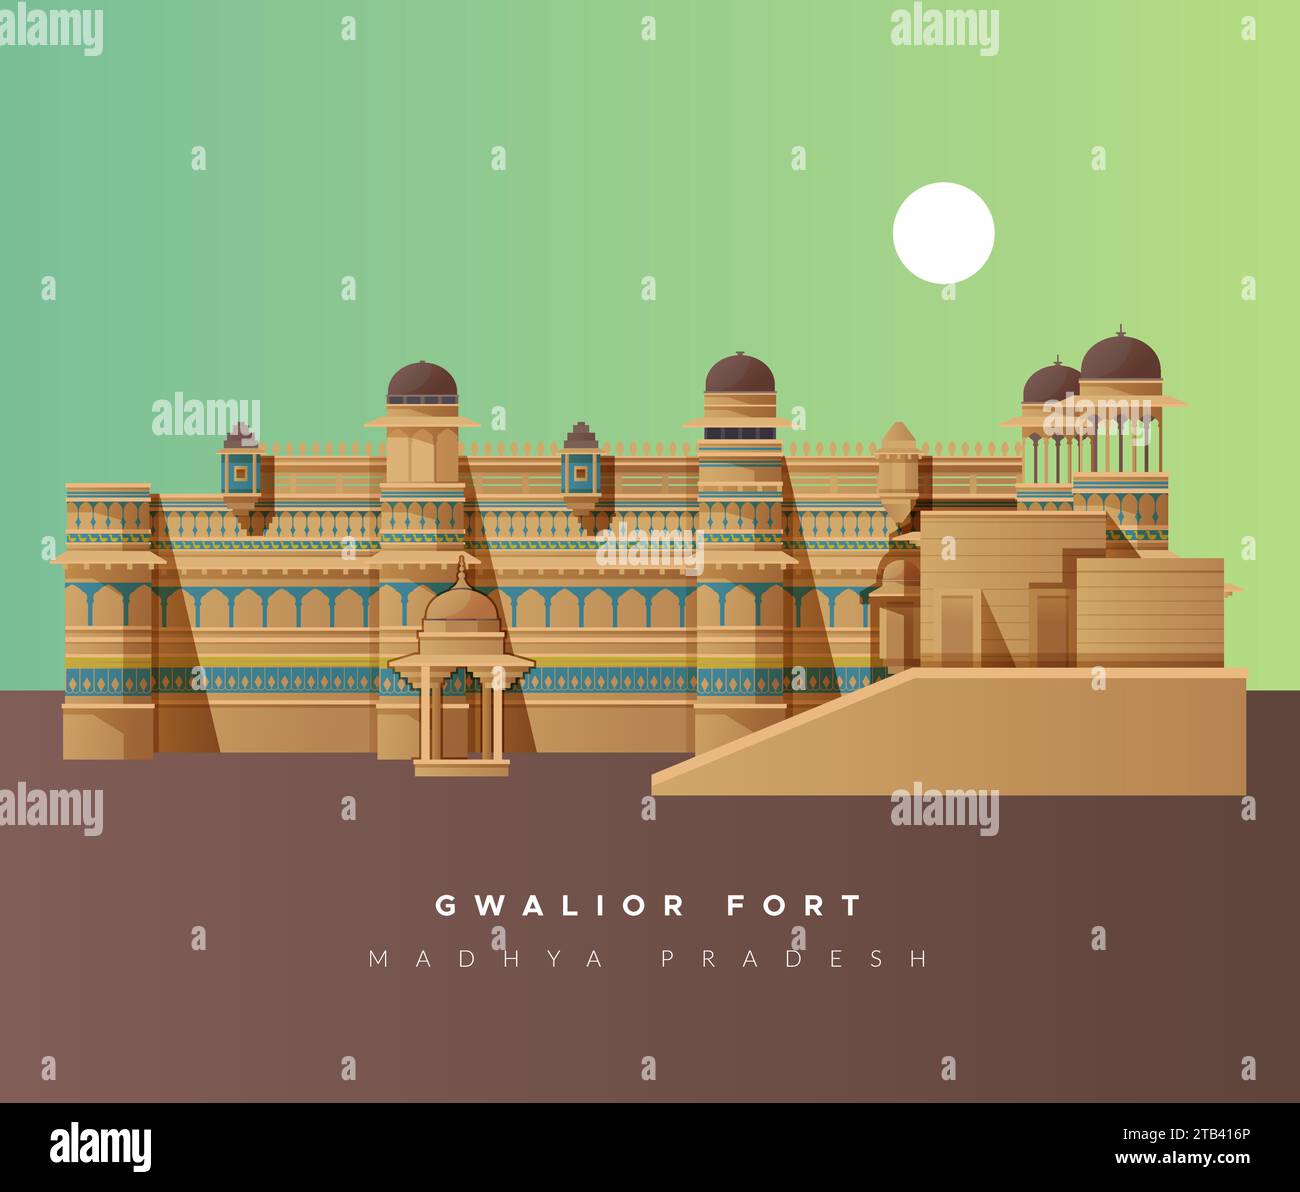 Gwalior Fort | Gwalior, Fort, Scenic